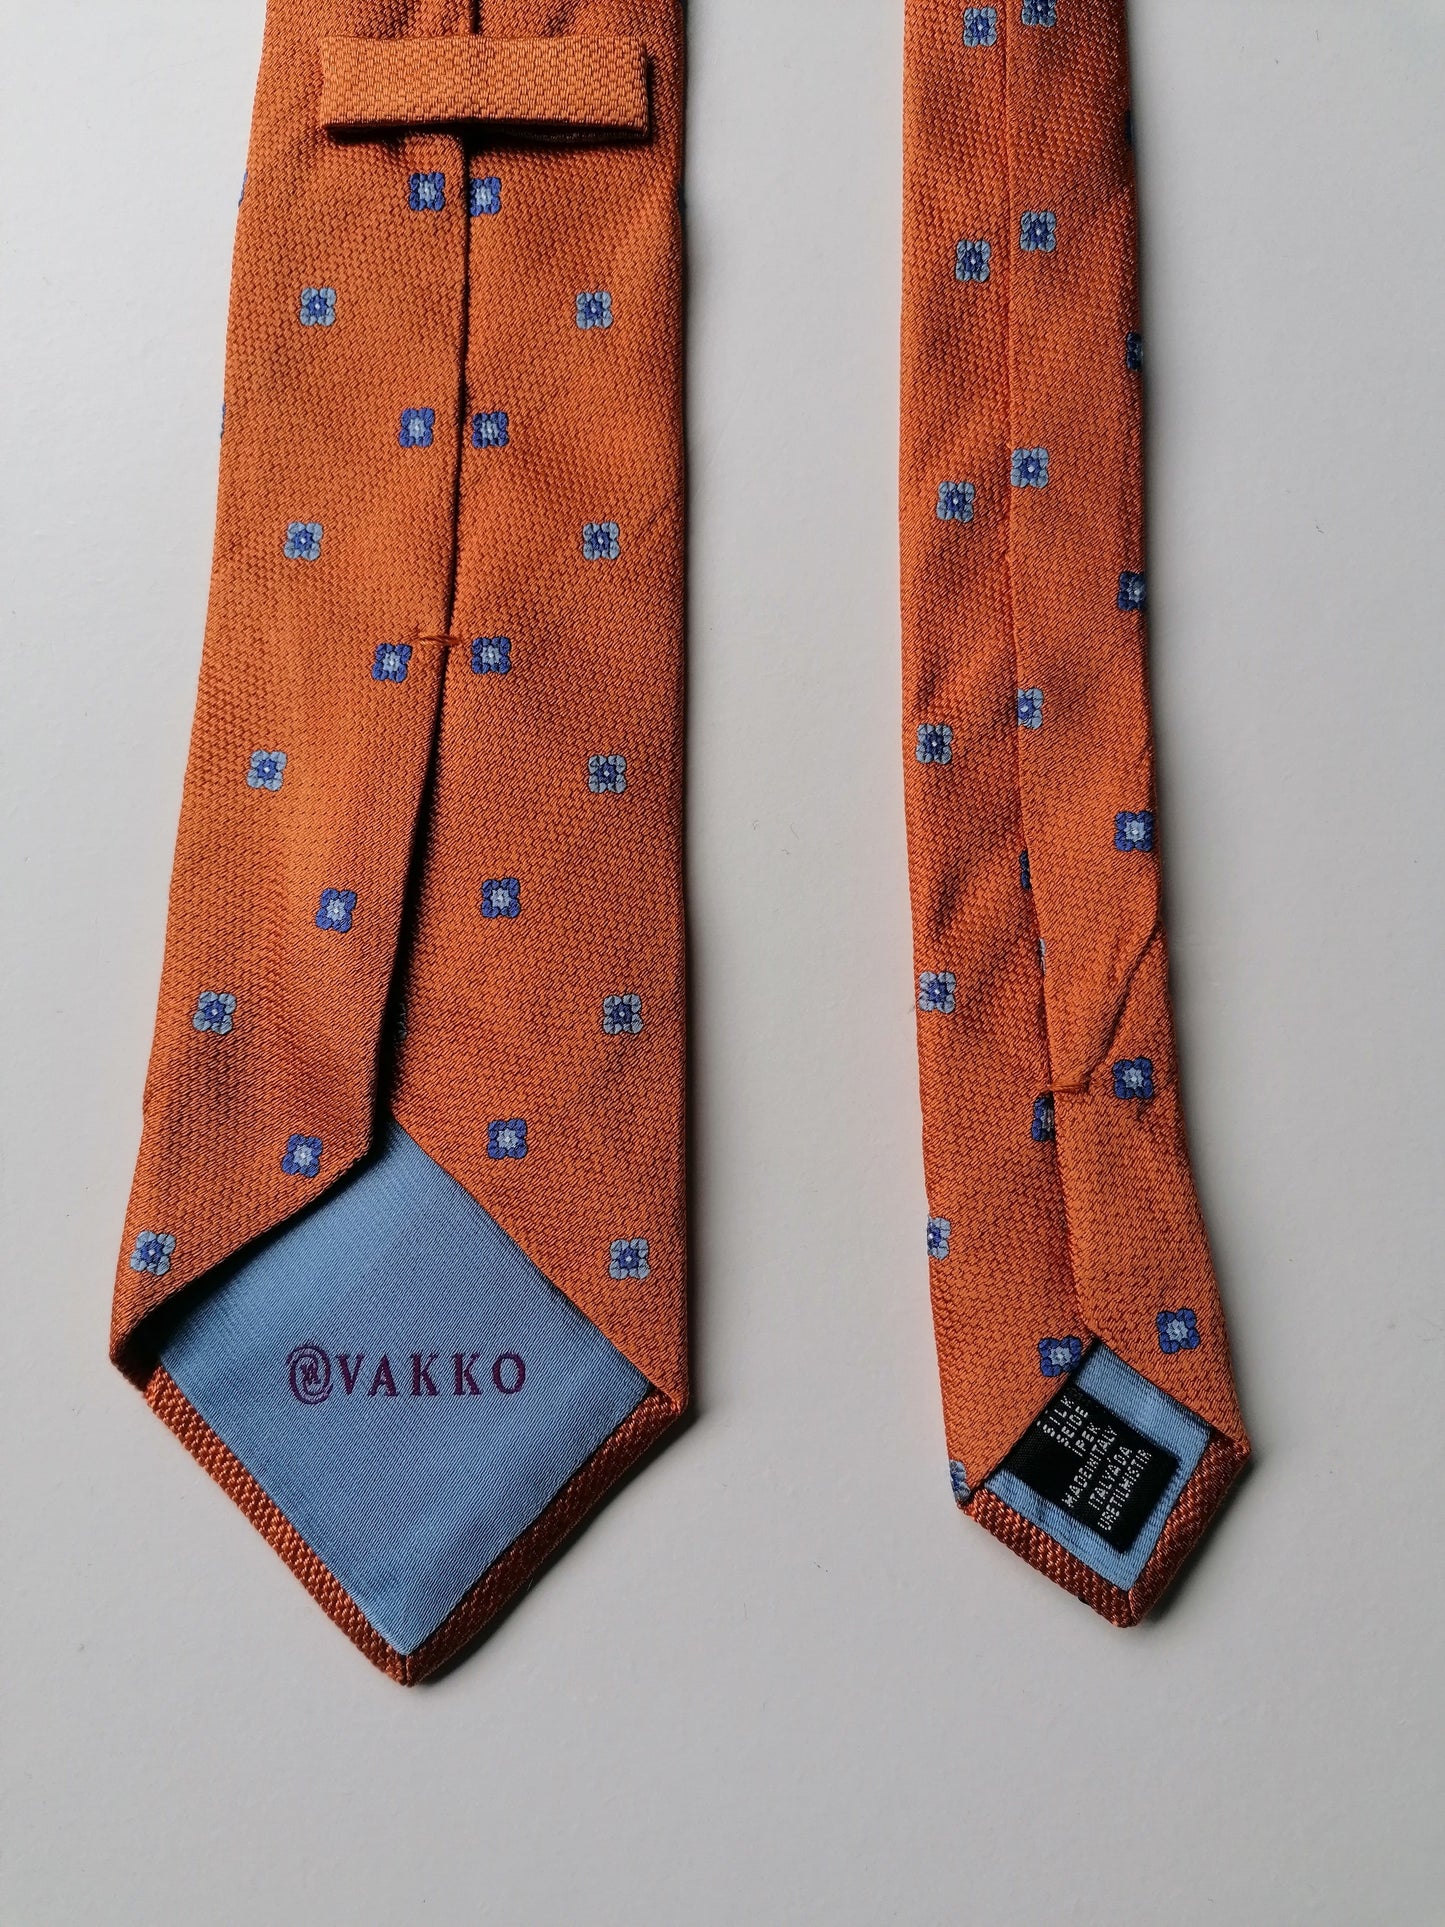 Vakko Silk Tie. Couleur bleu orange.